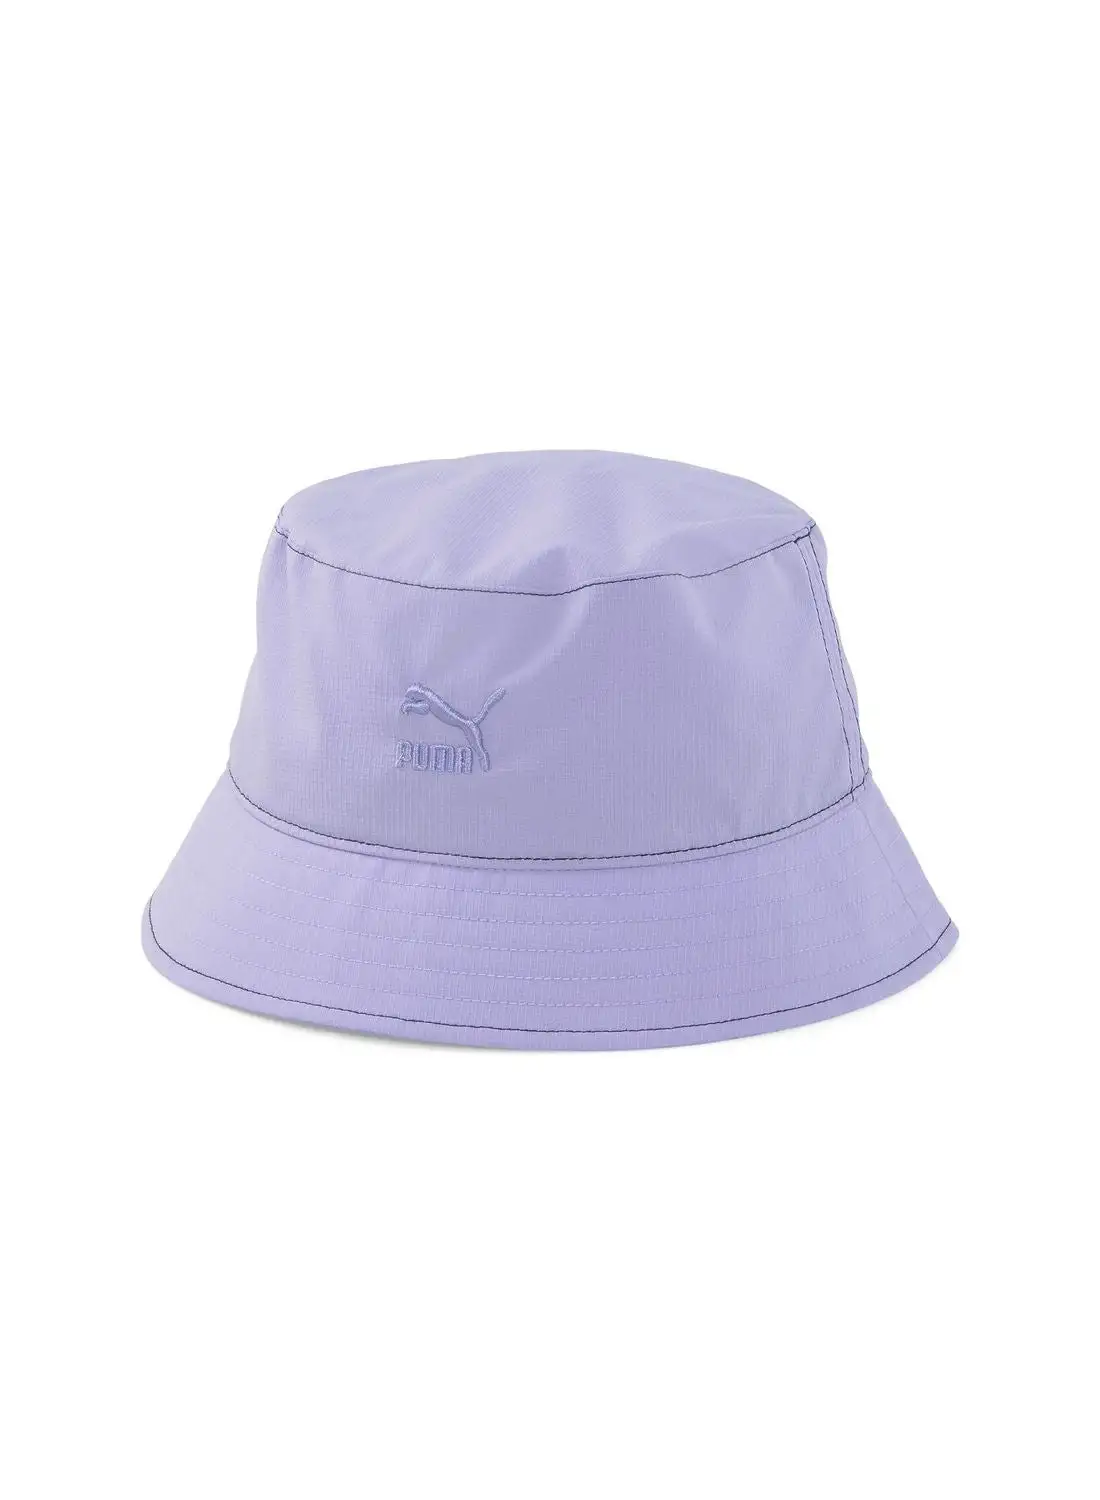 PUMA Prime Classics Bucket Hat